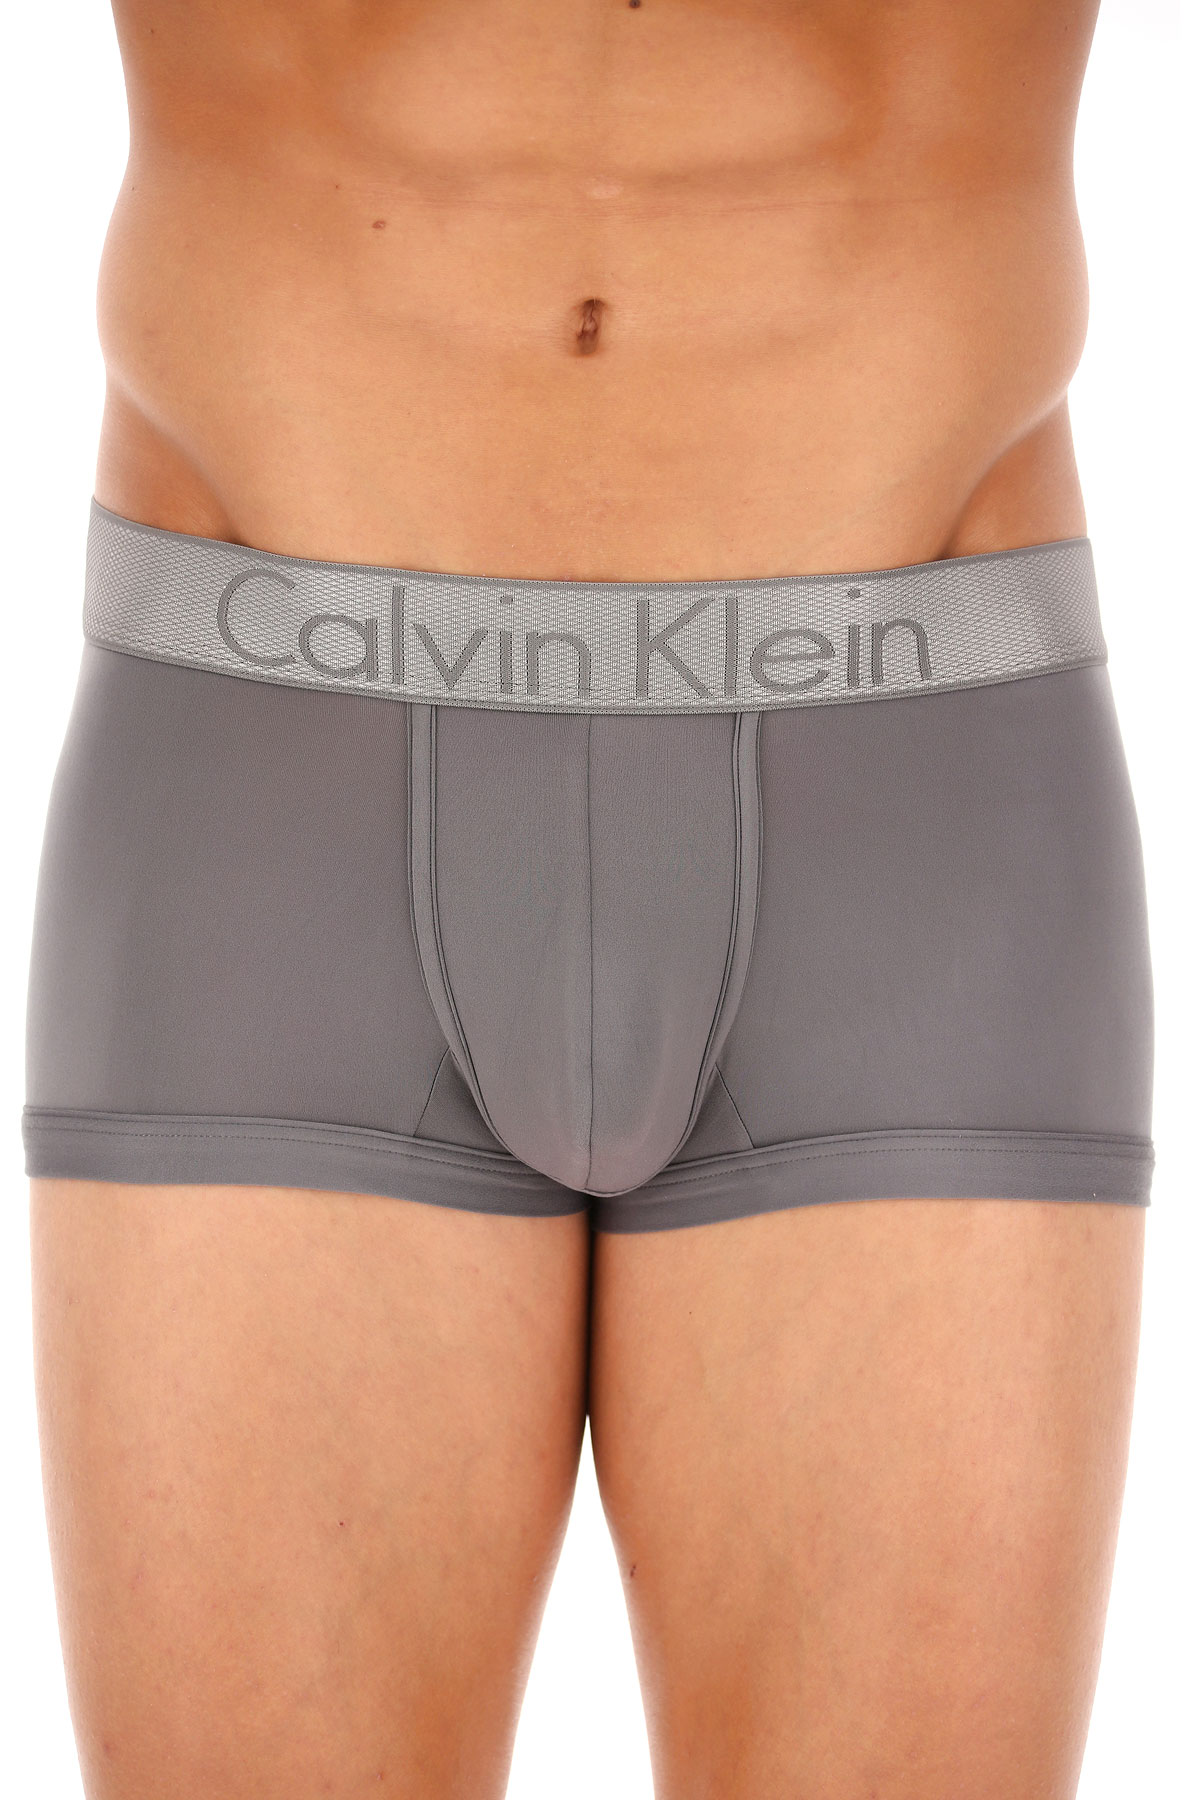 Mens Underwear Calvin Klein Style Code Nb1295a 5gs 5592